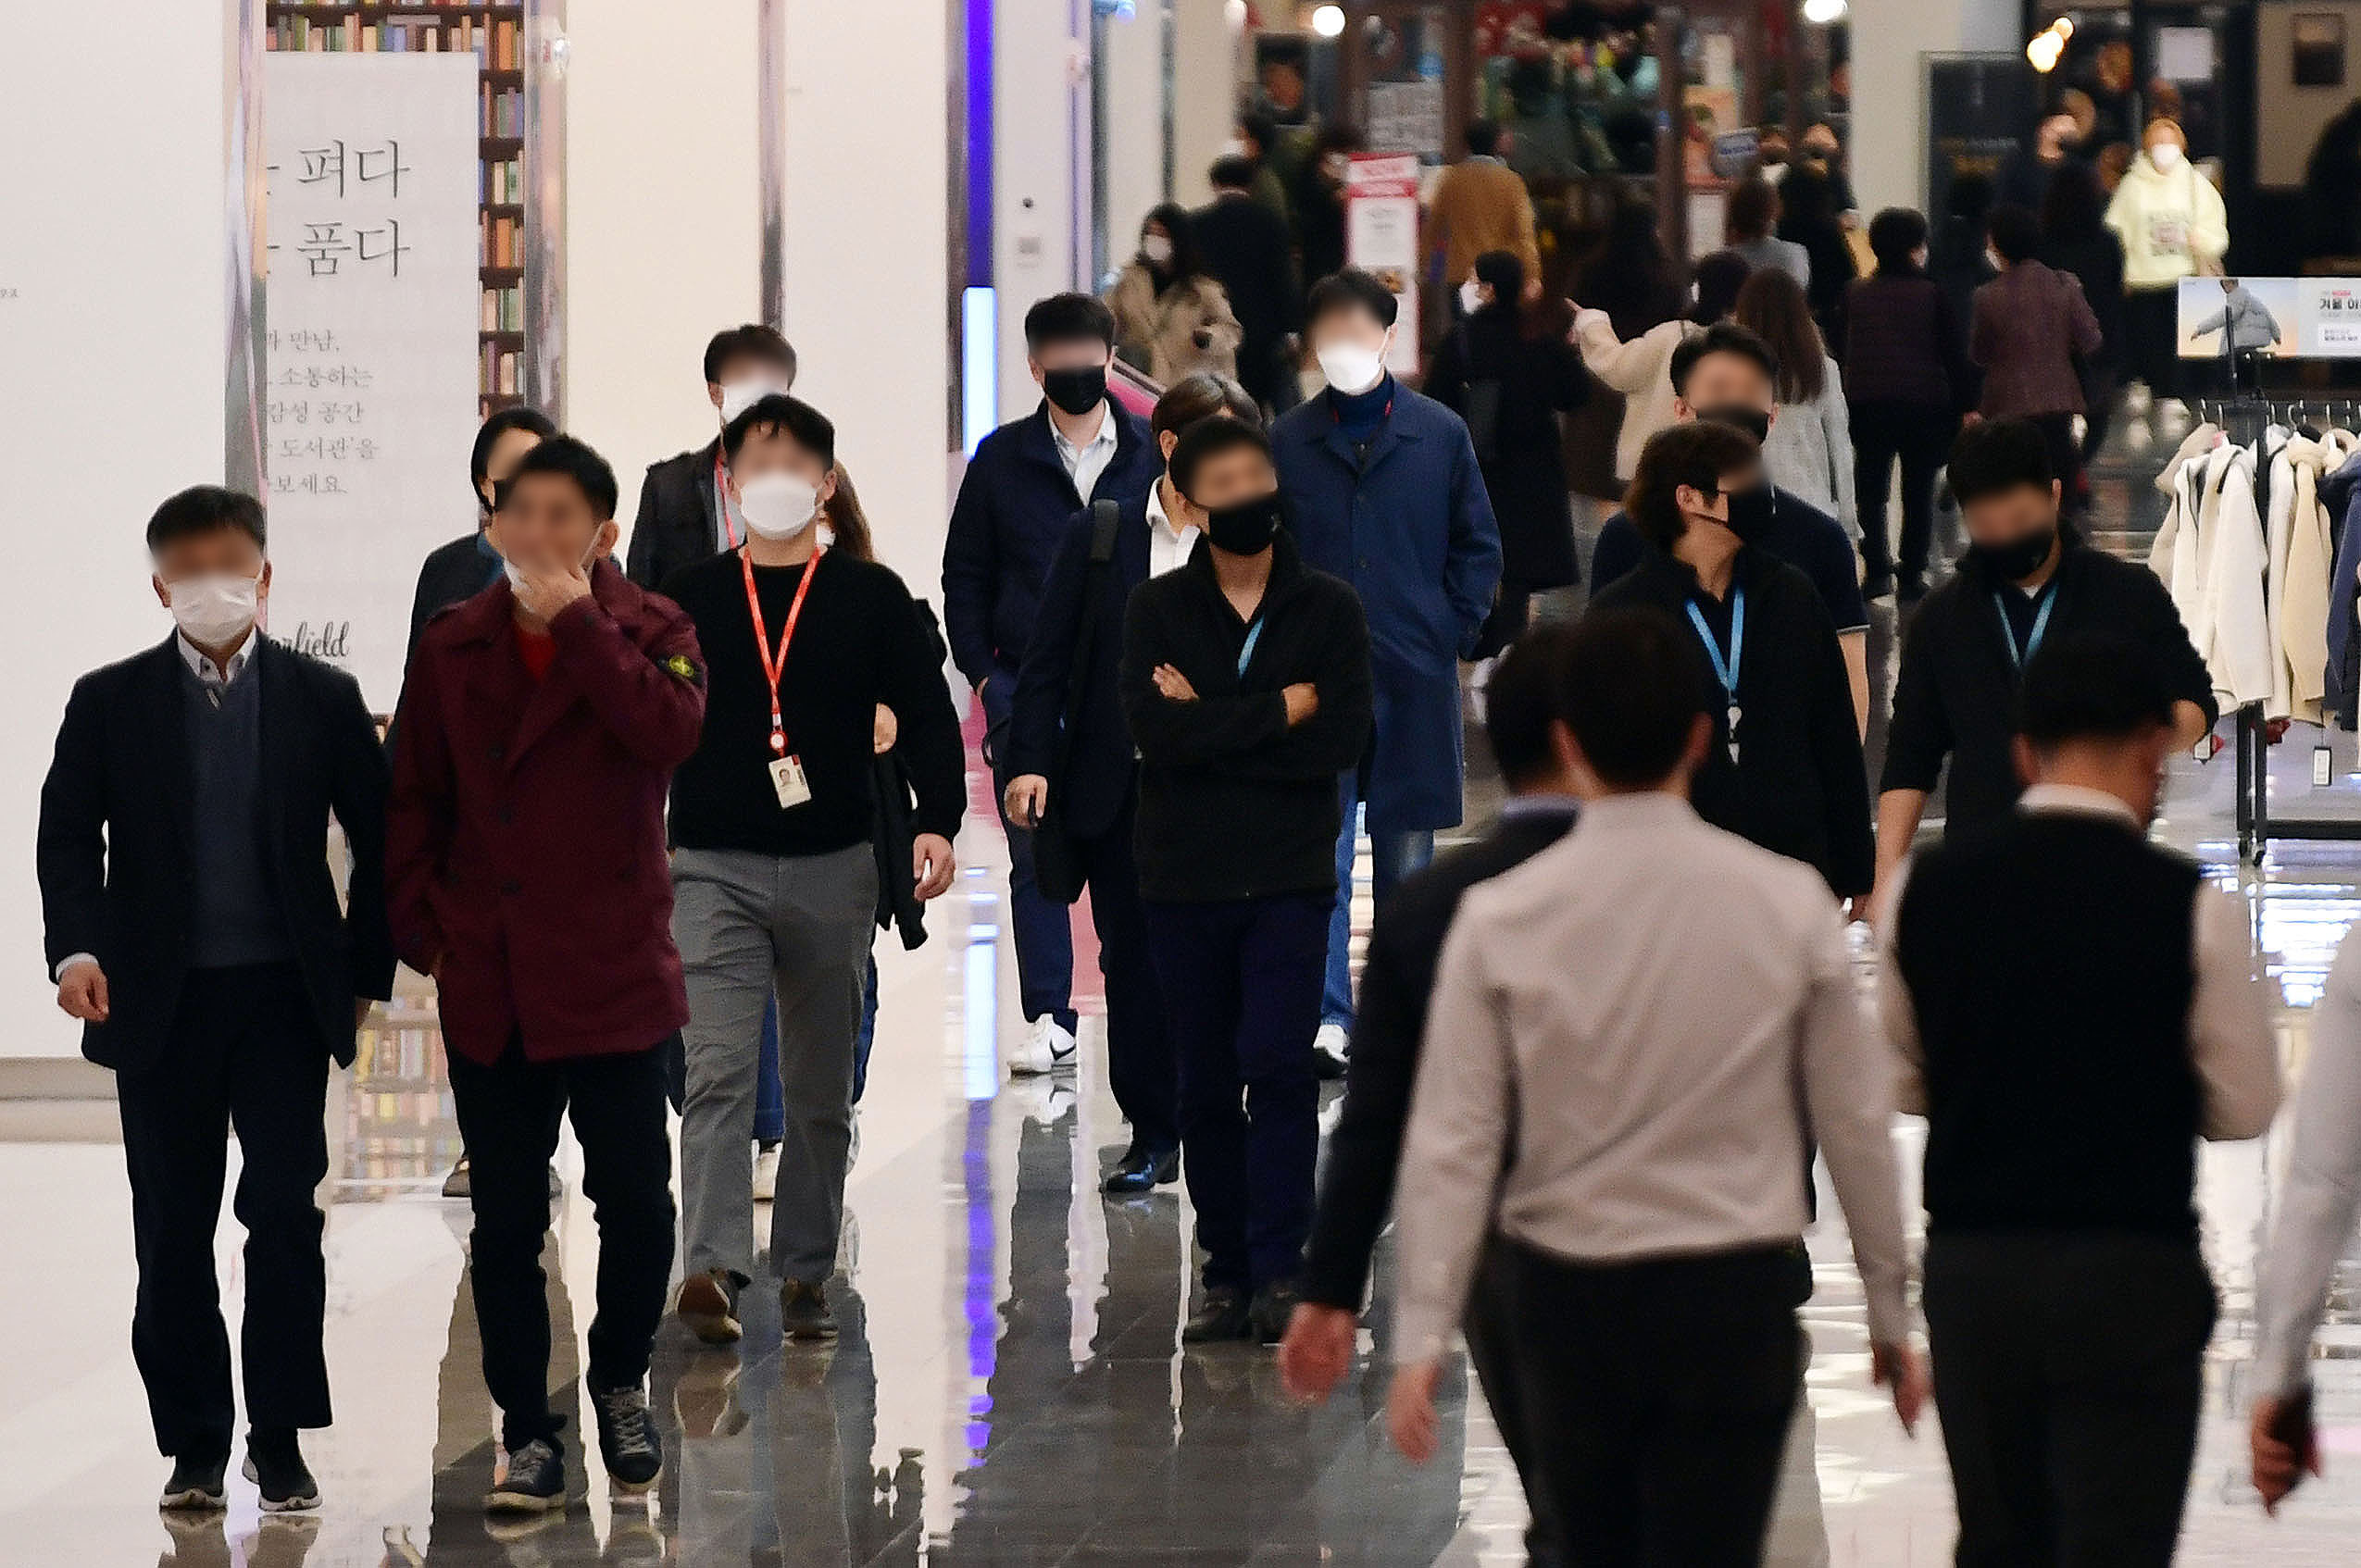 17일 서울 시내 한 대형 쇼핑몰에서 시민들이 마스크를 쓰고 걷고 있다. 2020 11. 17 박윤슬 기자 seul@seoul.co.kr